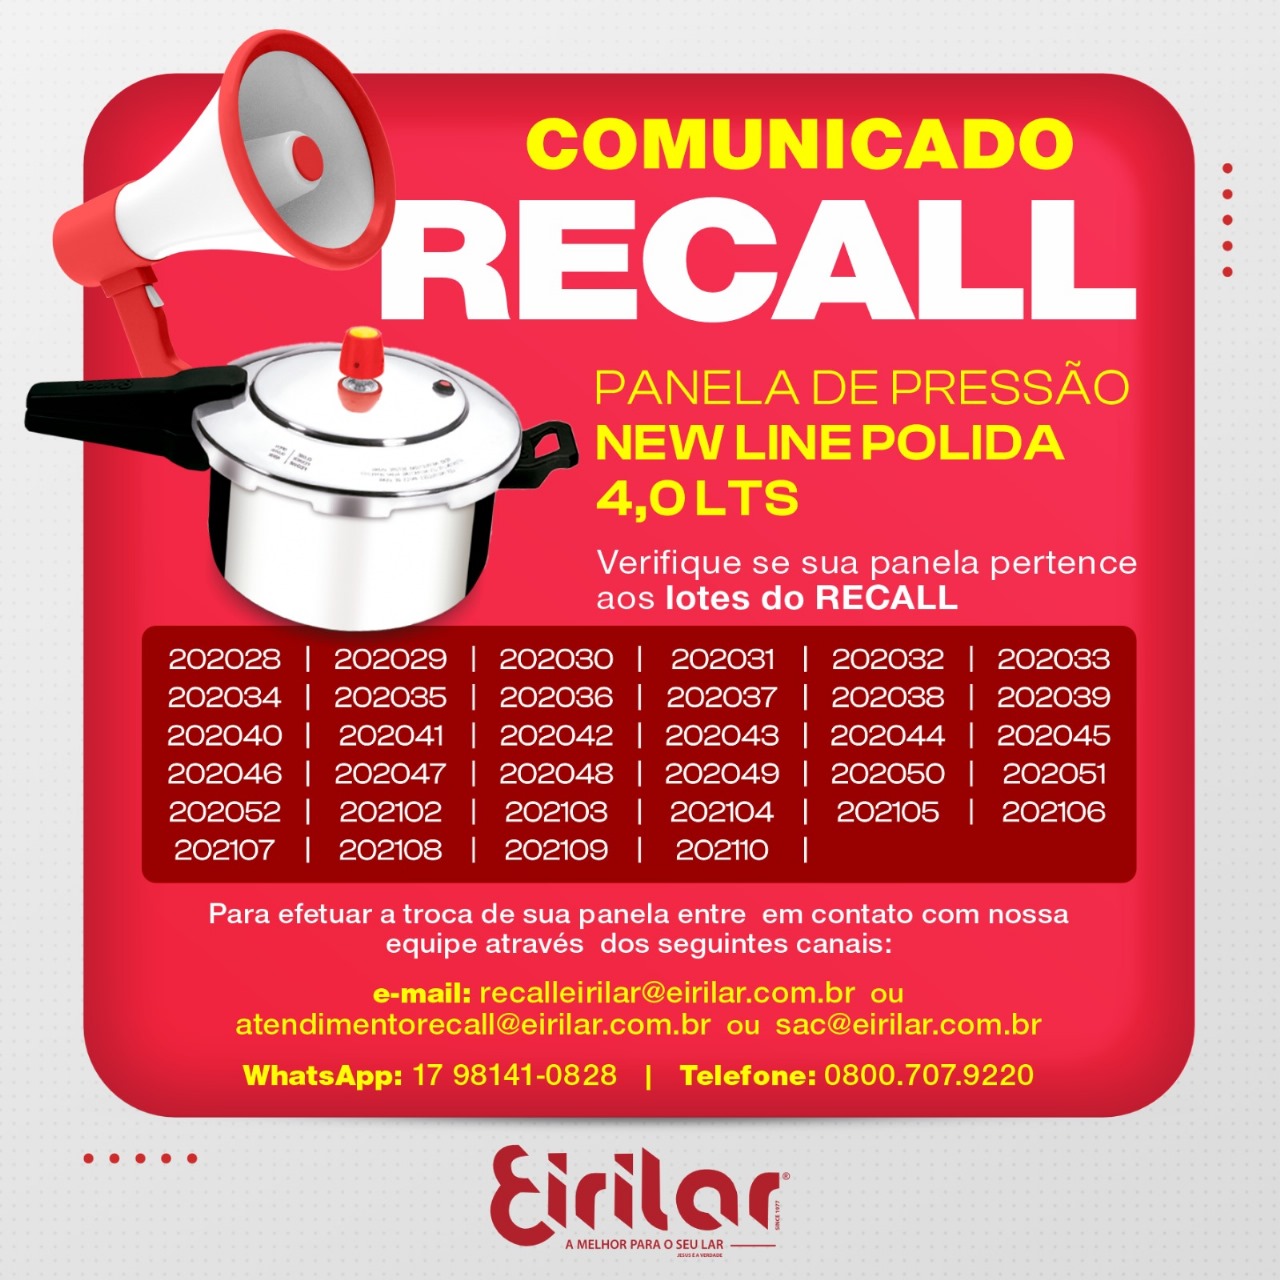 Photo of Comunicado de Recall